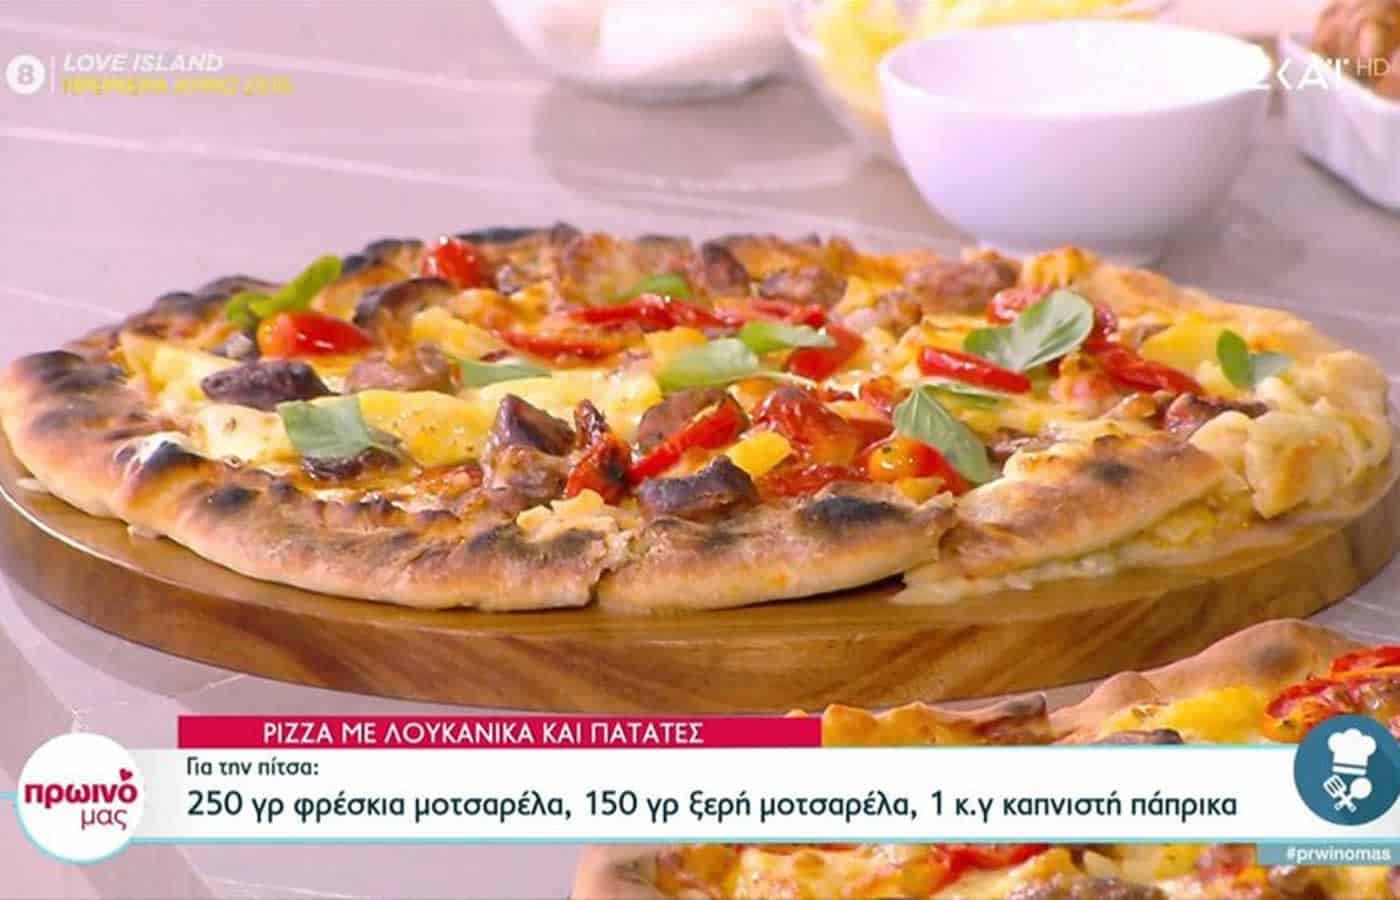 Μια διαφορετική Pizza έφτιαξε σήμερα στην εκπομπή της Φαίης Σκορδά, Πρωινό μας στον ΣΚΑΪ. Ο δημοφιλής σεφ έφτιαξε μια Pizza με λουκάνικα